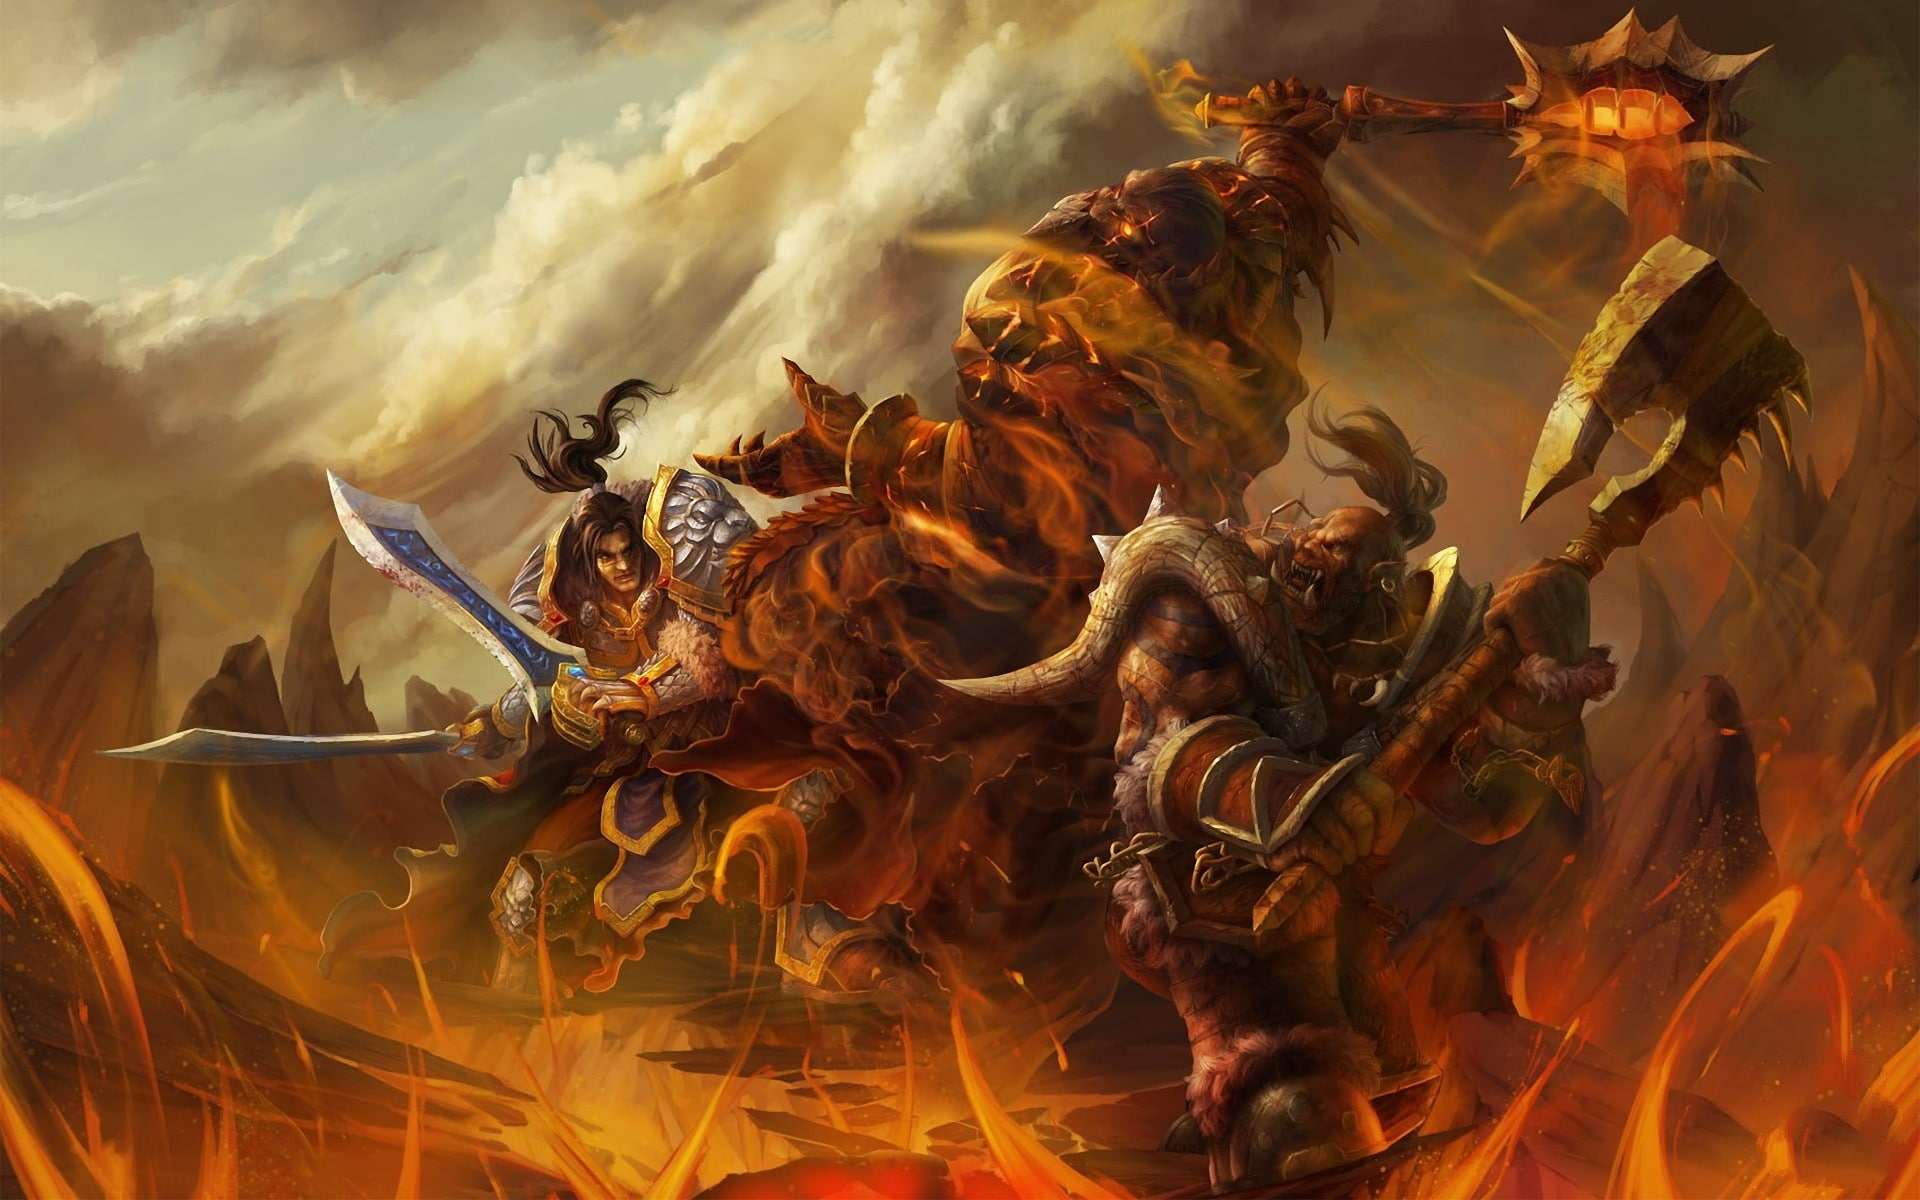 Warcraft, Deathwing, Garrosh Hellscream, King Varian Wrynn